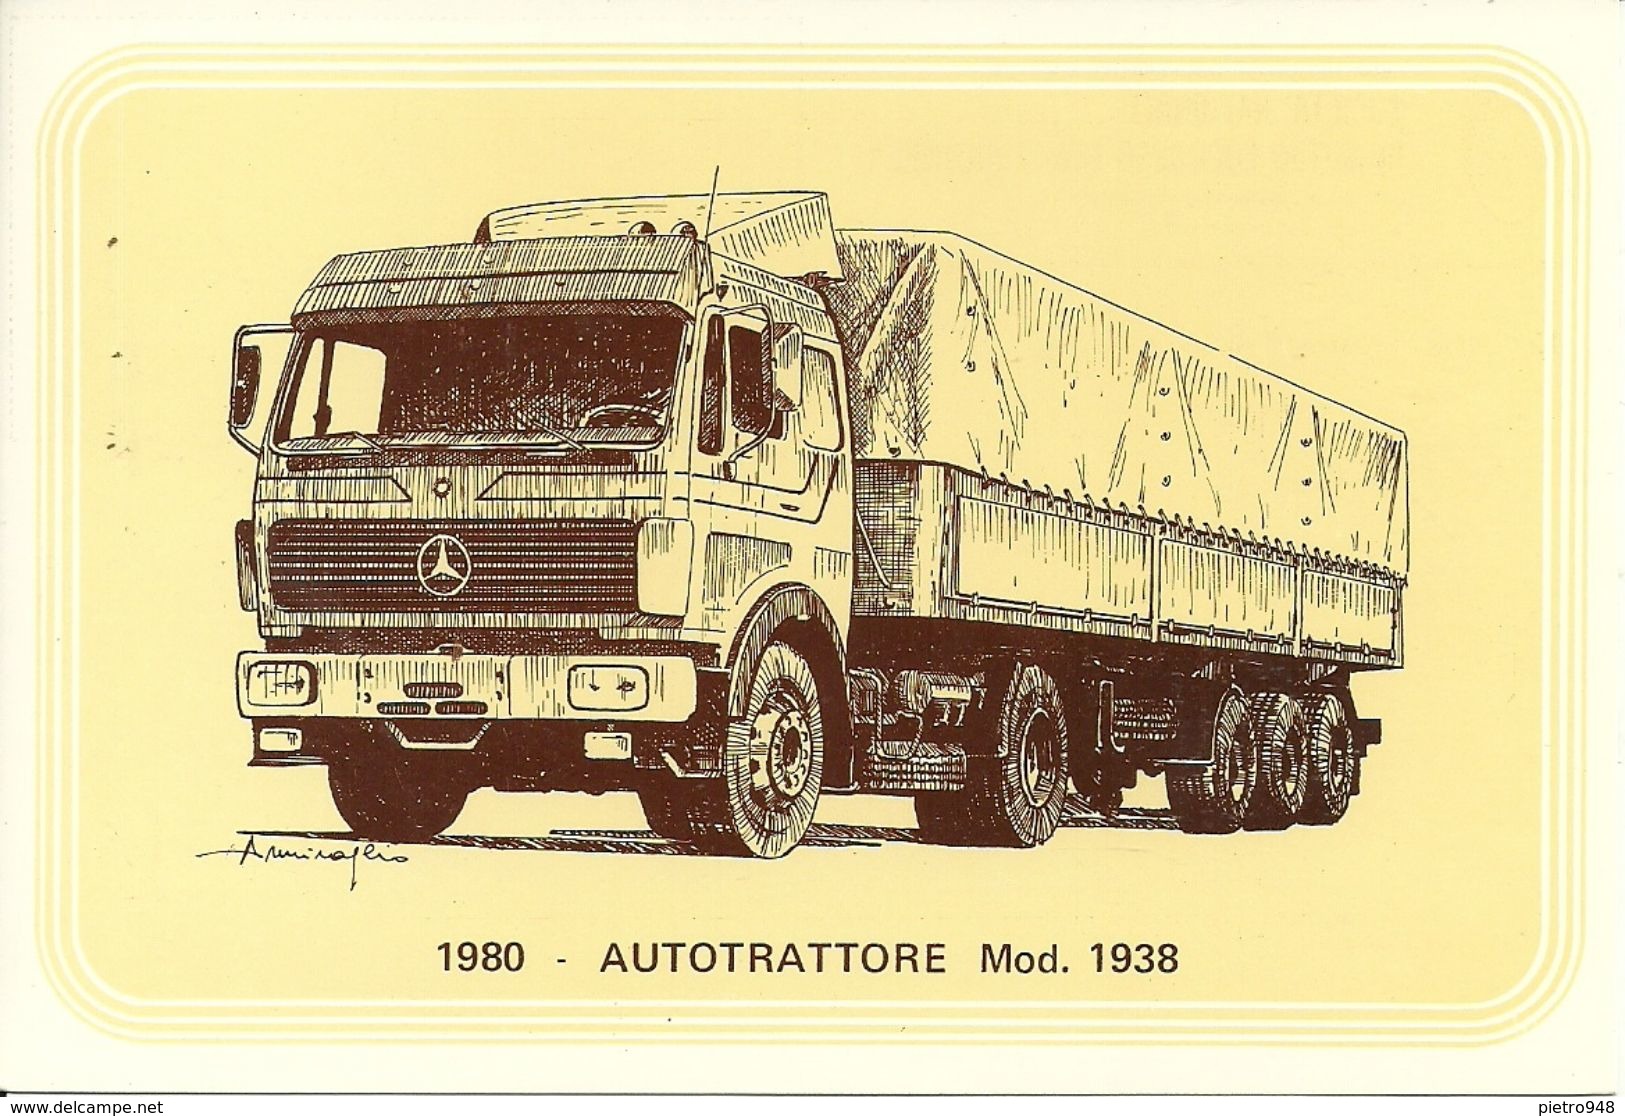 Camion, (Autotrattore) Autocarro Mercedes Mod. 1938, Anno 1980 - Società Nazionale Di Mutuo Soccorso Fra Ferrovieri - Camion, Tir